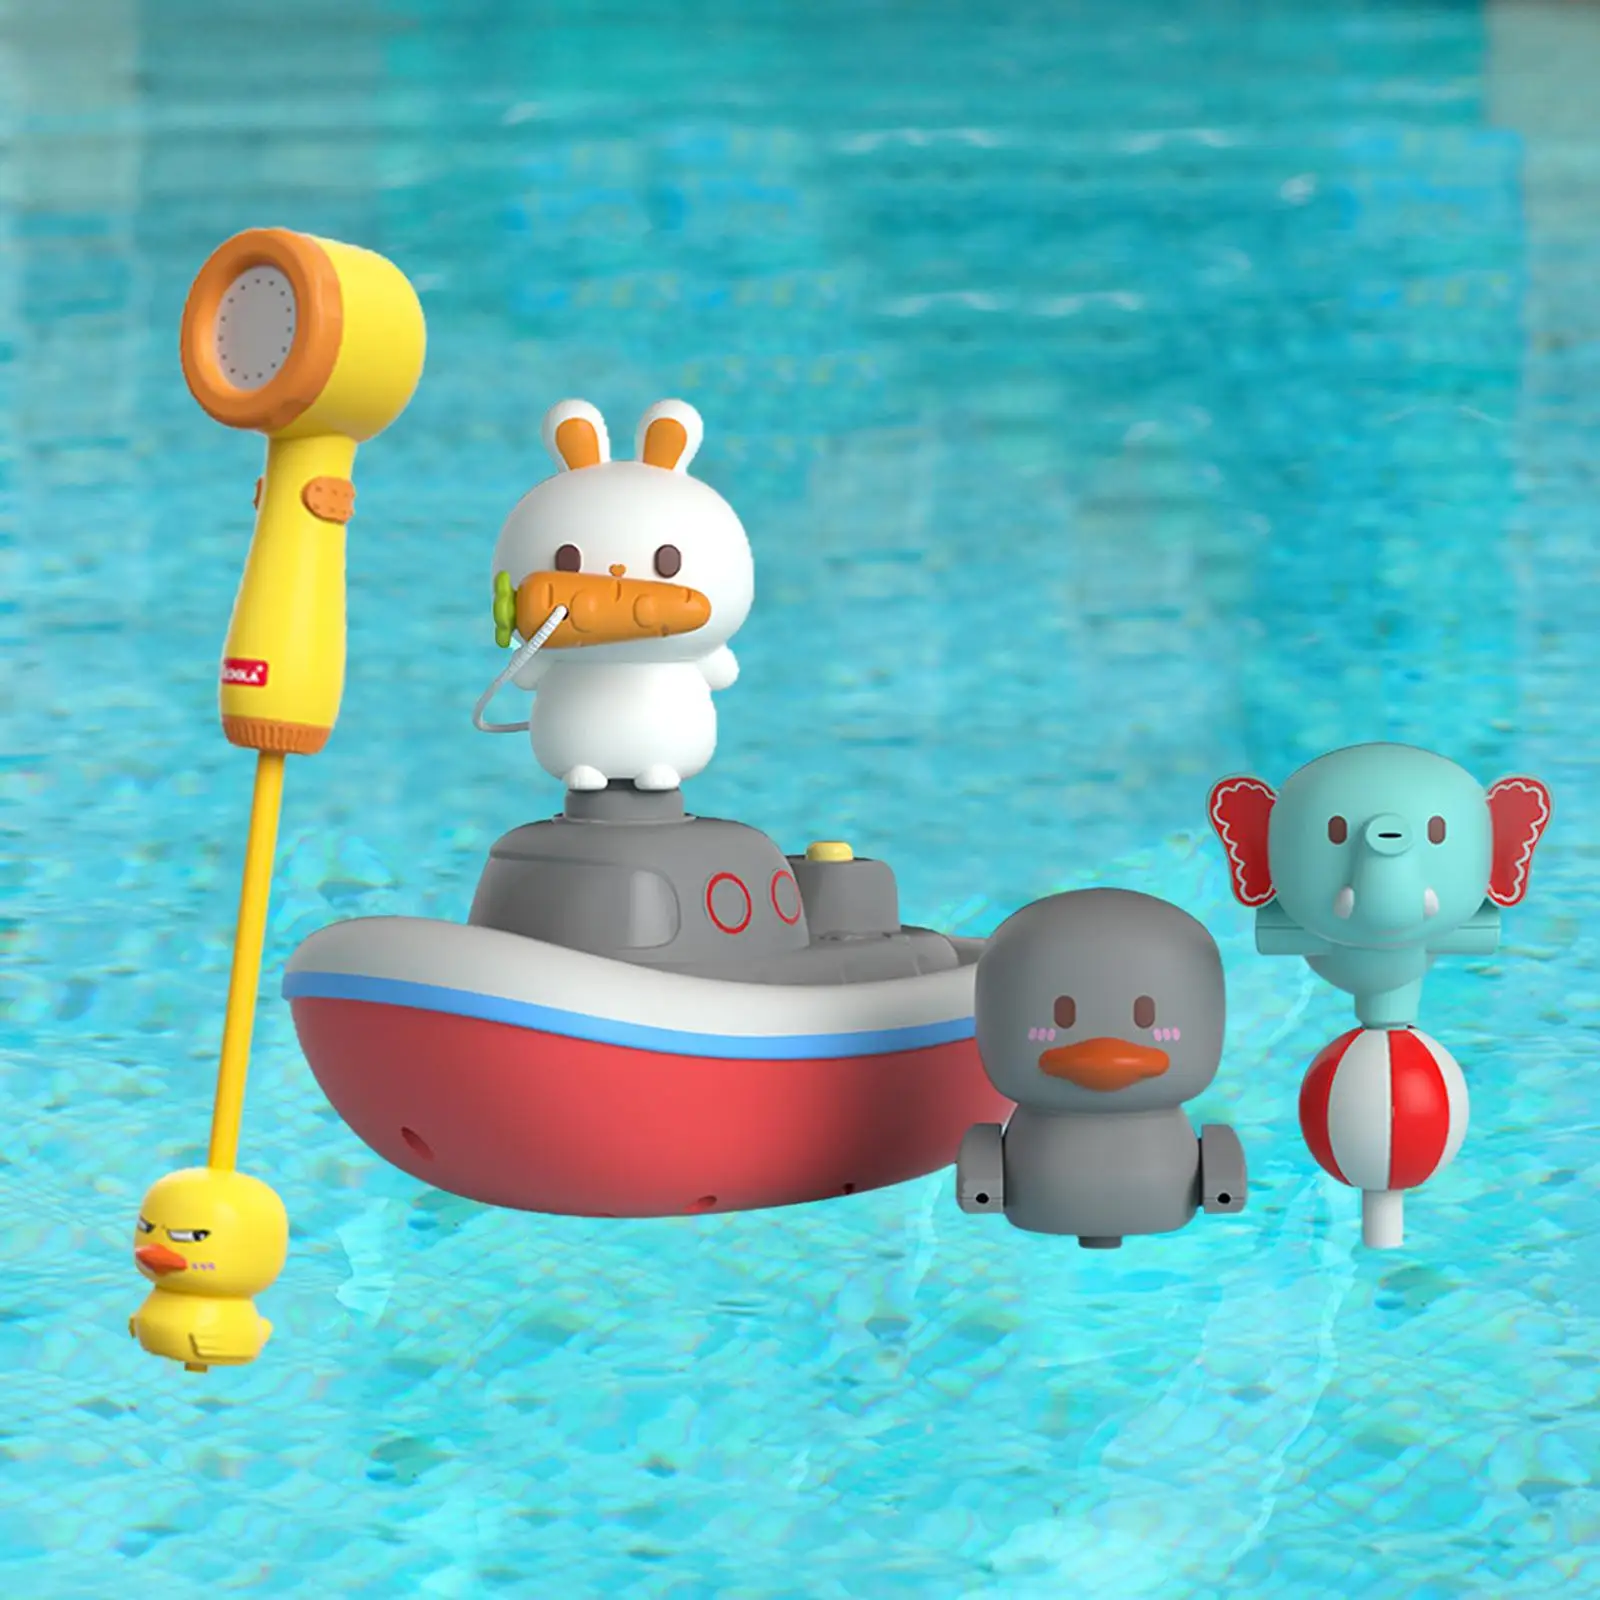 Water Spraying Toy, Baby Bathtub Water Toys, Portable Interactive Bath Toy, Sprinkler Bathtub toy Bath toy Bath Toys for